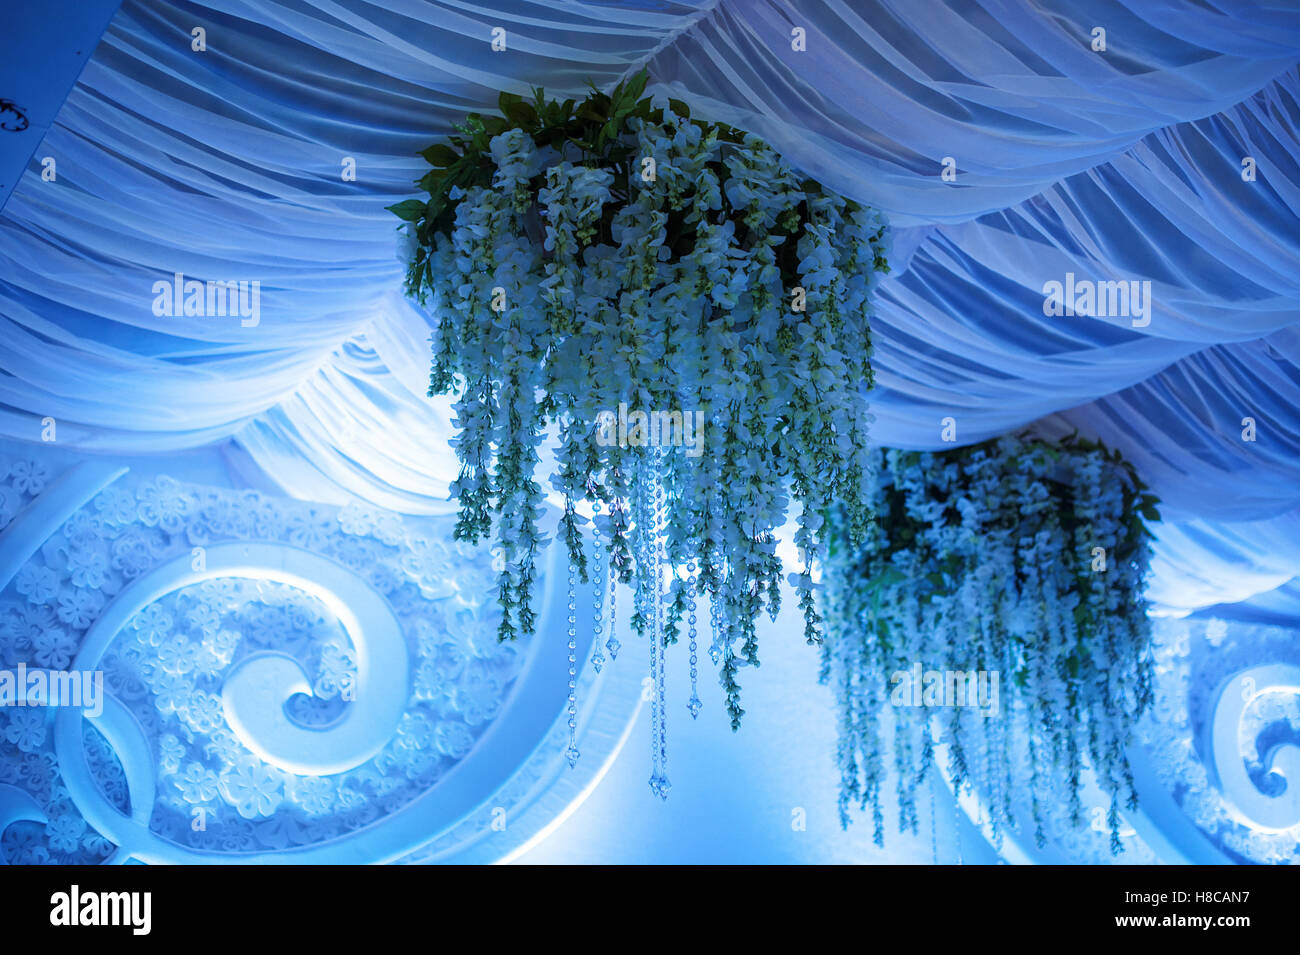 Beau décor de fleurs dans des tons bleus pour la cérémonie du mariage Banque D'Images